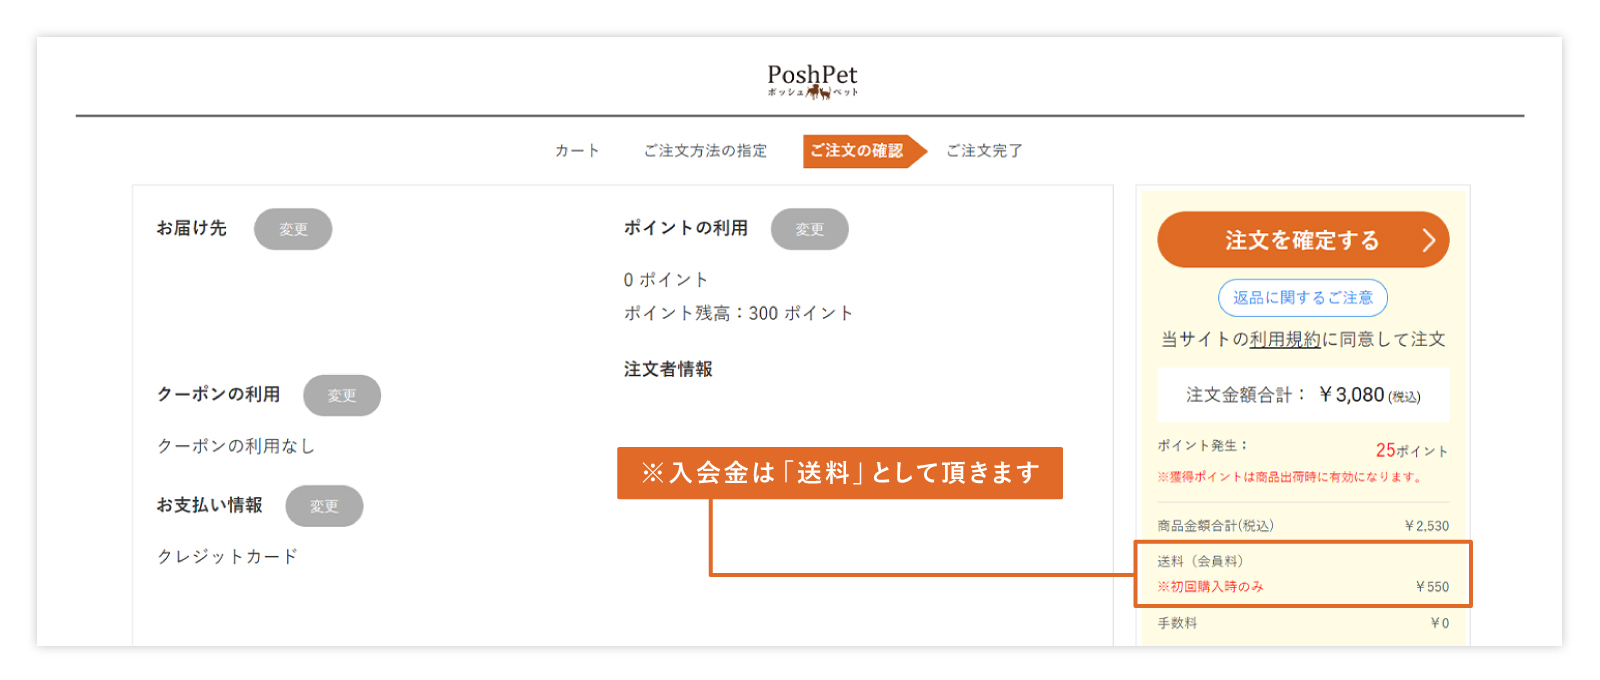 通販サイトPoshPetの初回注文確認ページのイメージ画像